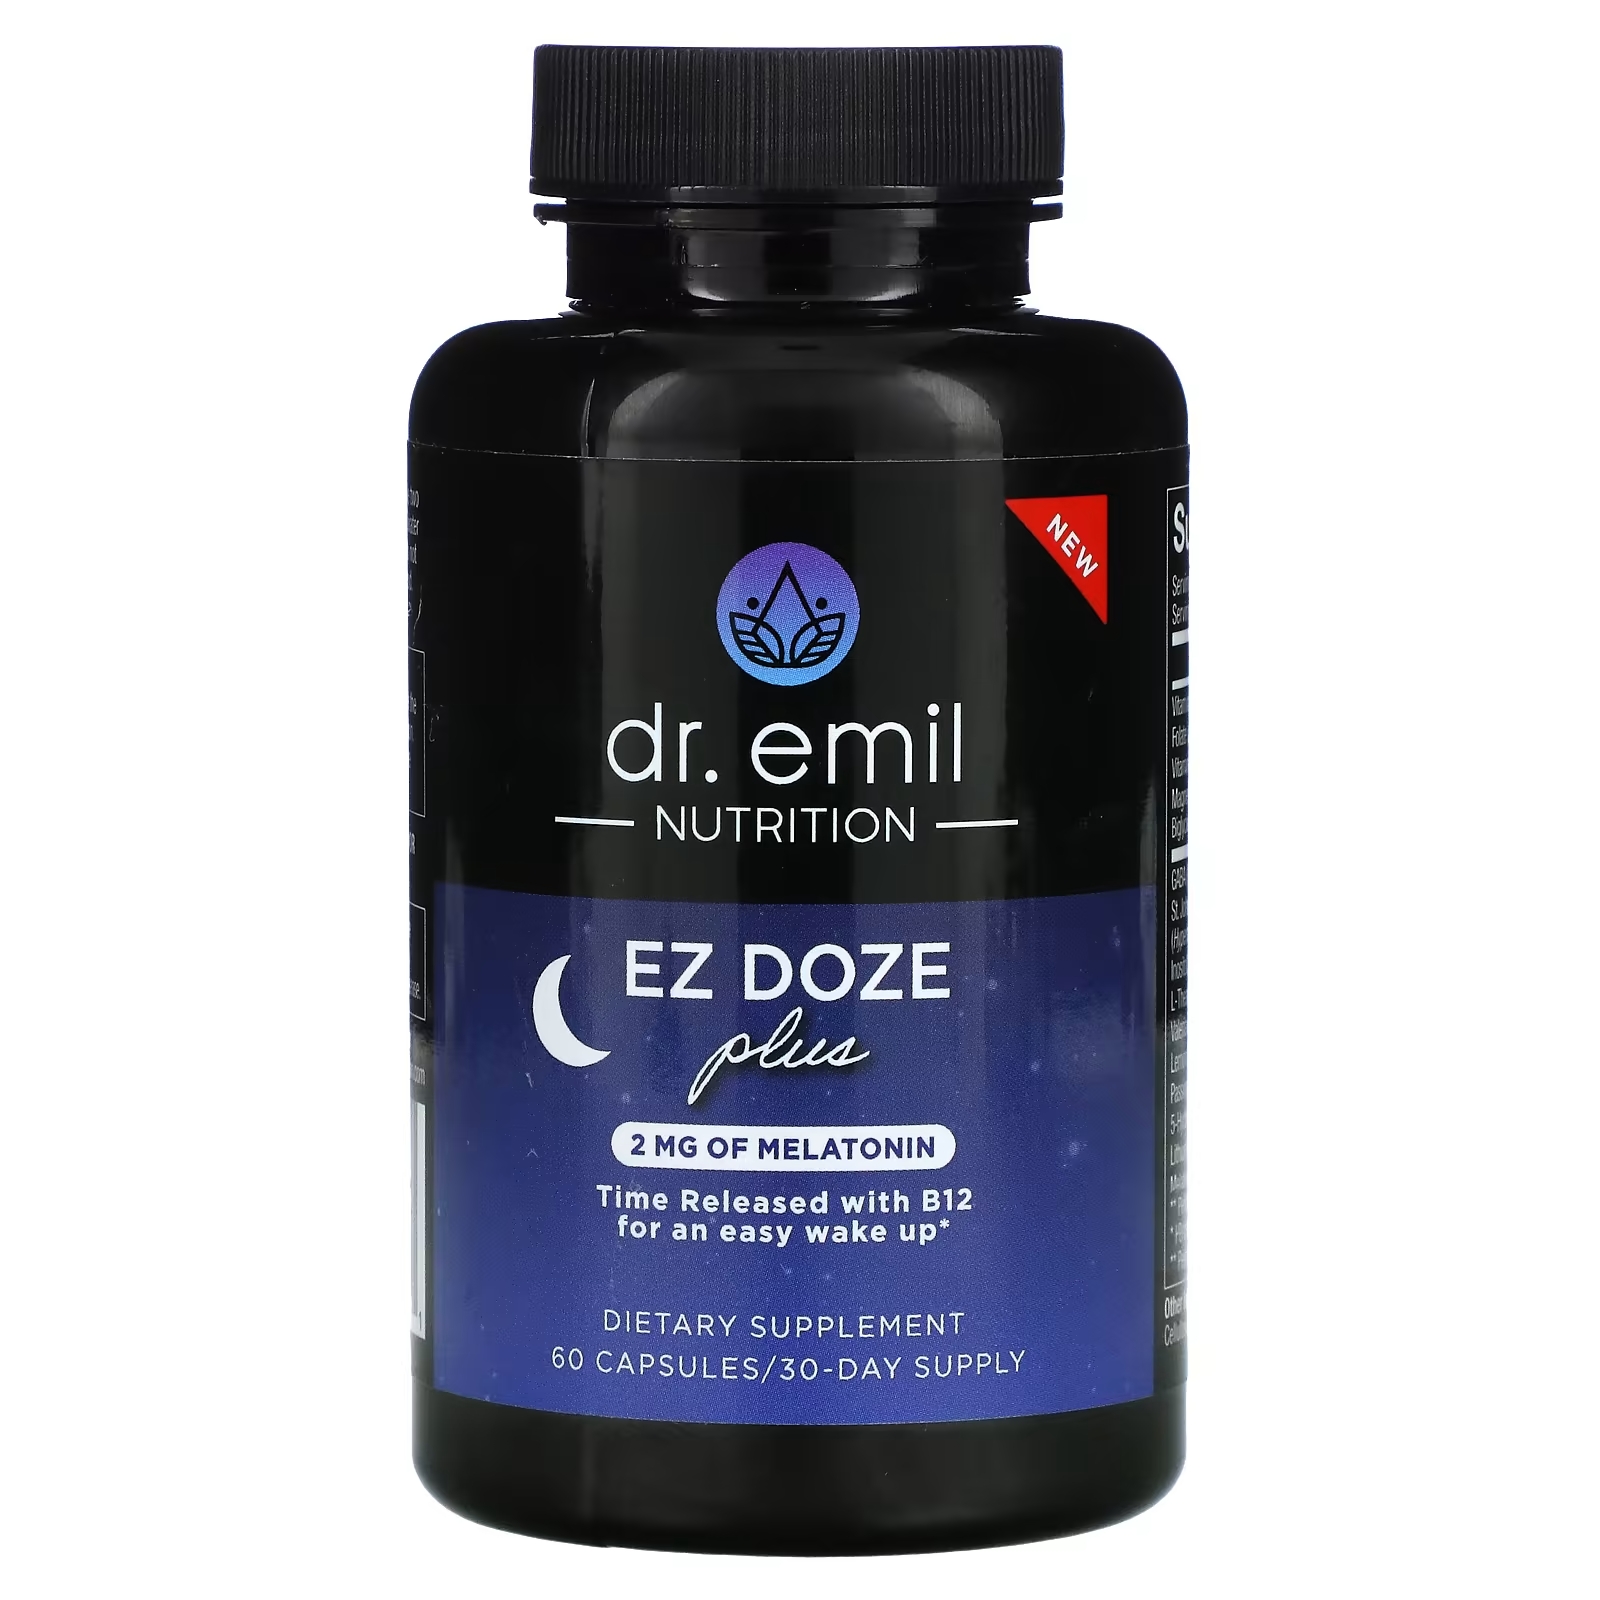 Dr Emil Nutrition EZ DOZE Plus Melatonin, 60 капсул dr emil nutrition liveraid 60 капсул